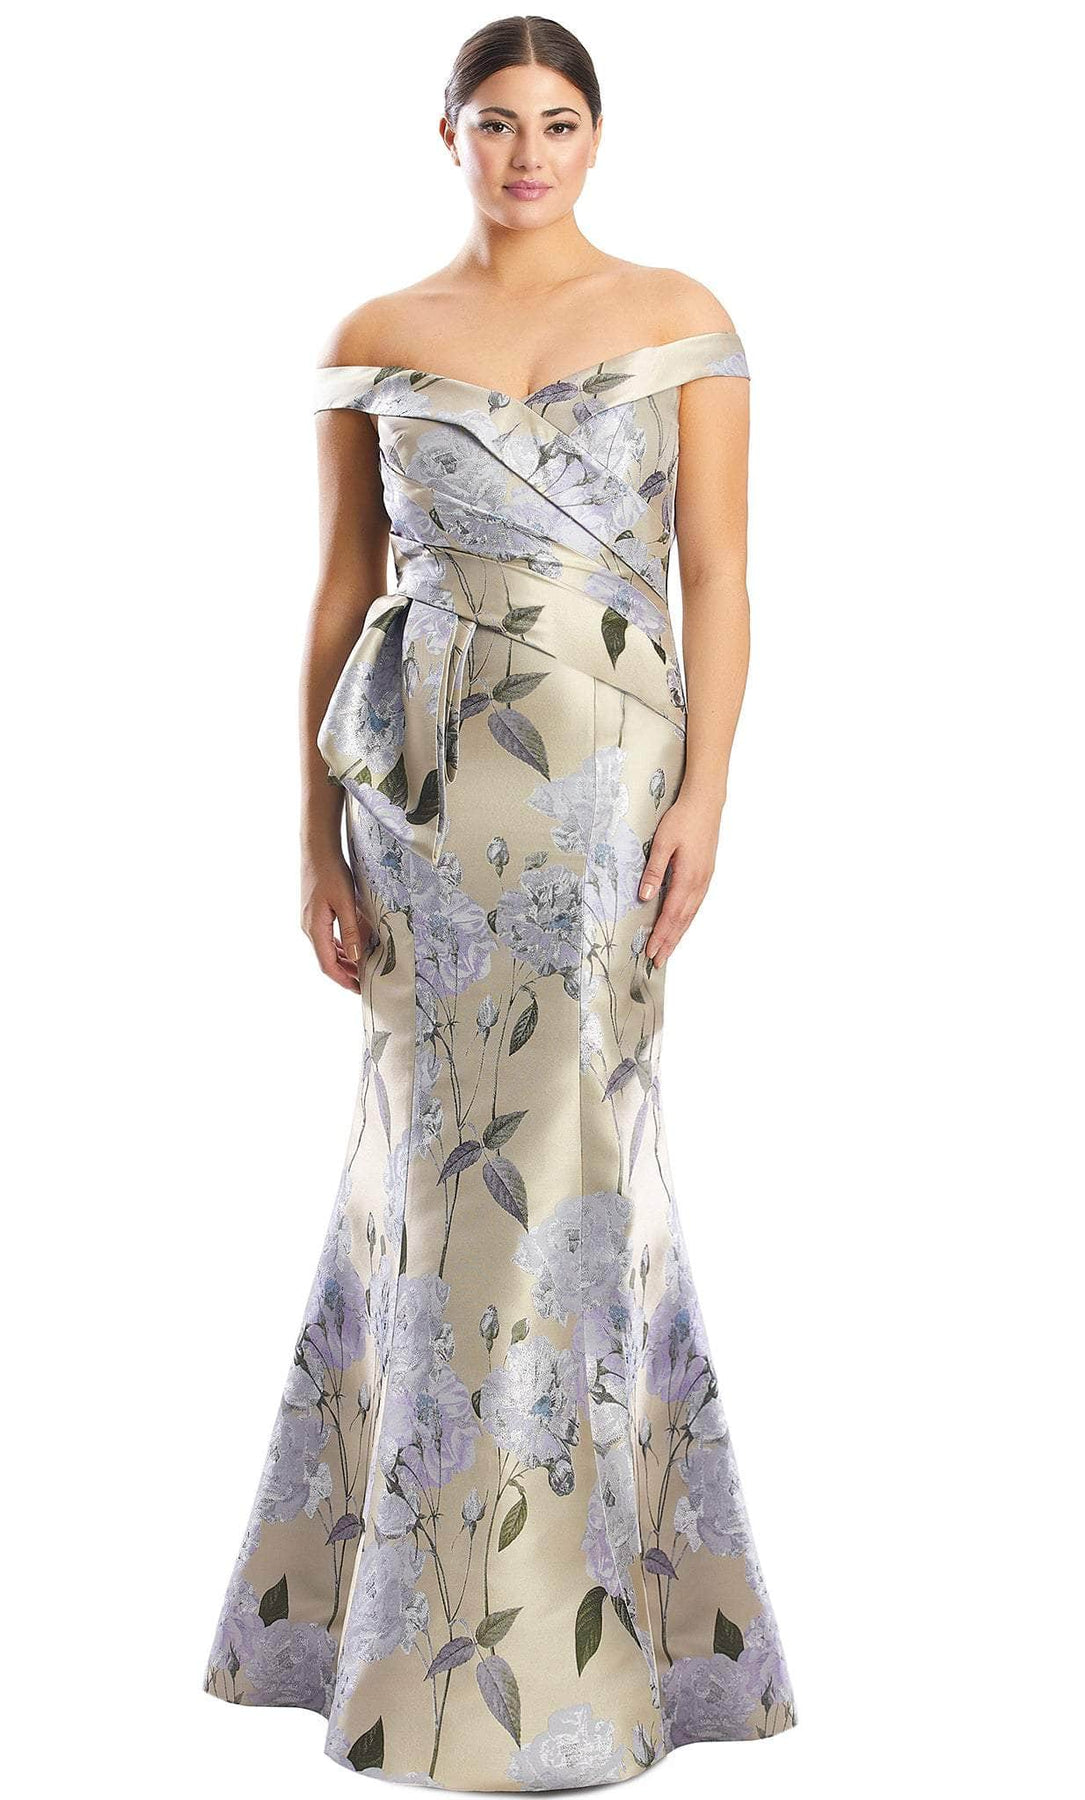 Alexander by Daymor 1767S23 - Off-Shoulder Floral Evening Dress Evening Dresses 00 / Taupe/Multi